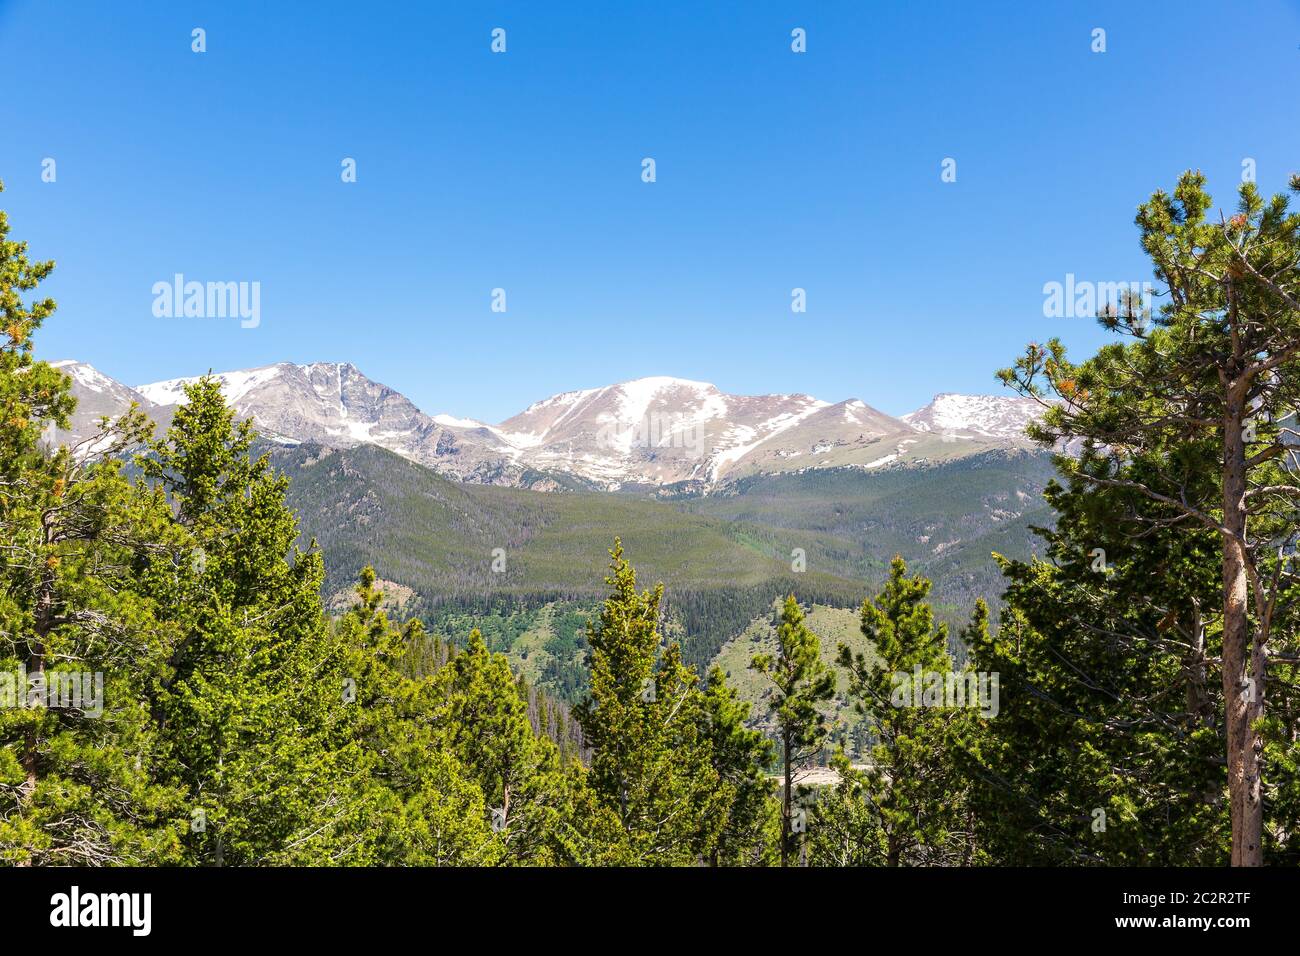 Paesaggio della valle con foresta verde negli stati uniti. Cielo blu e nuvole sullo sfondo. Foto Stock